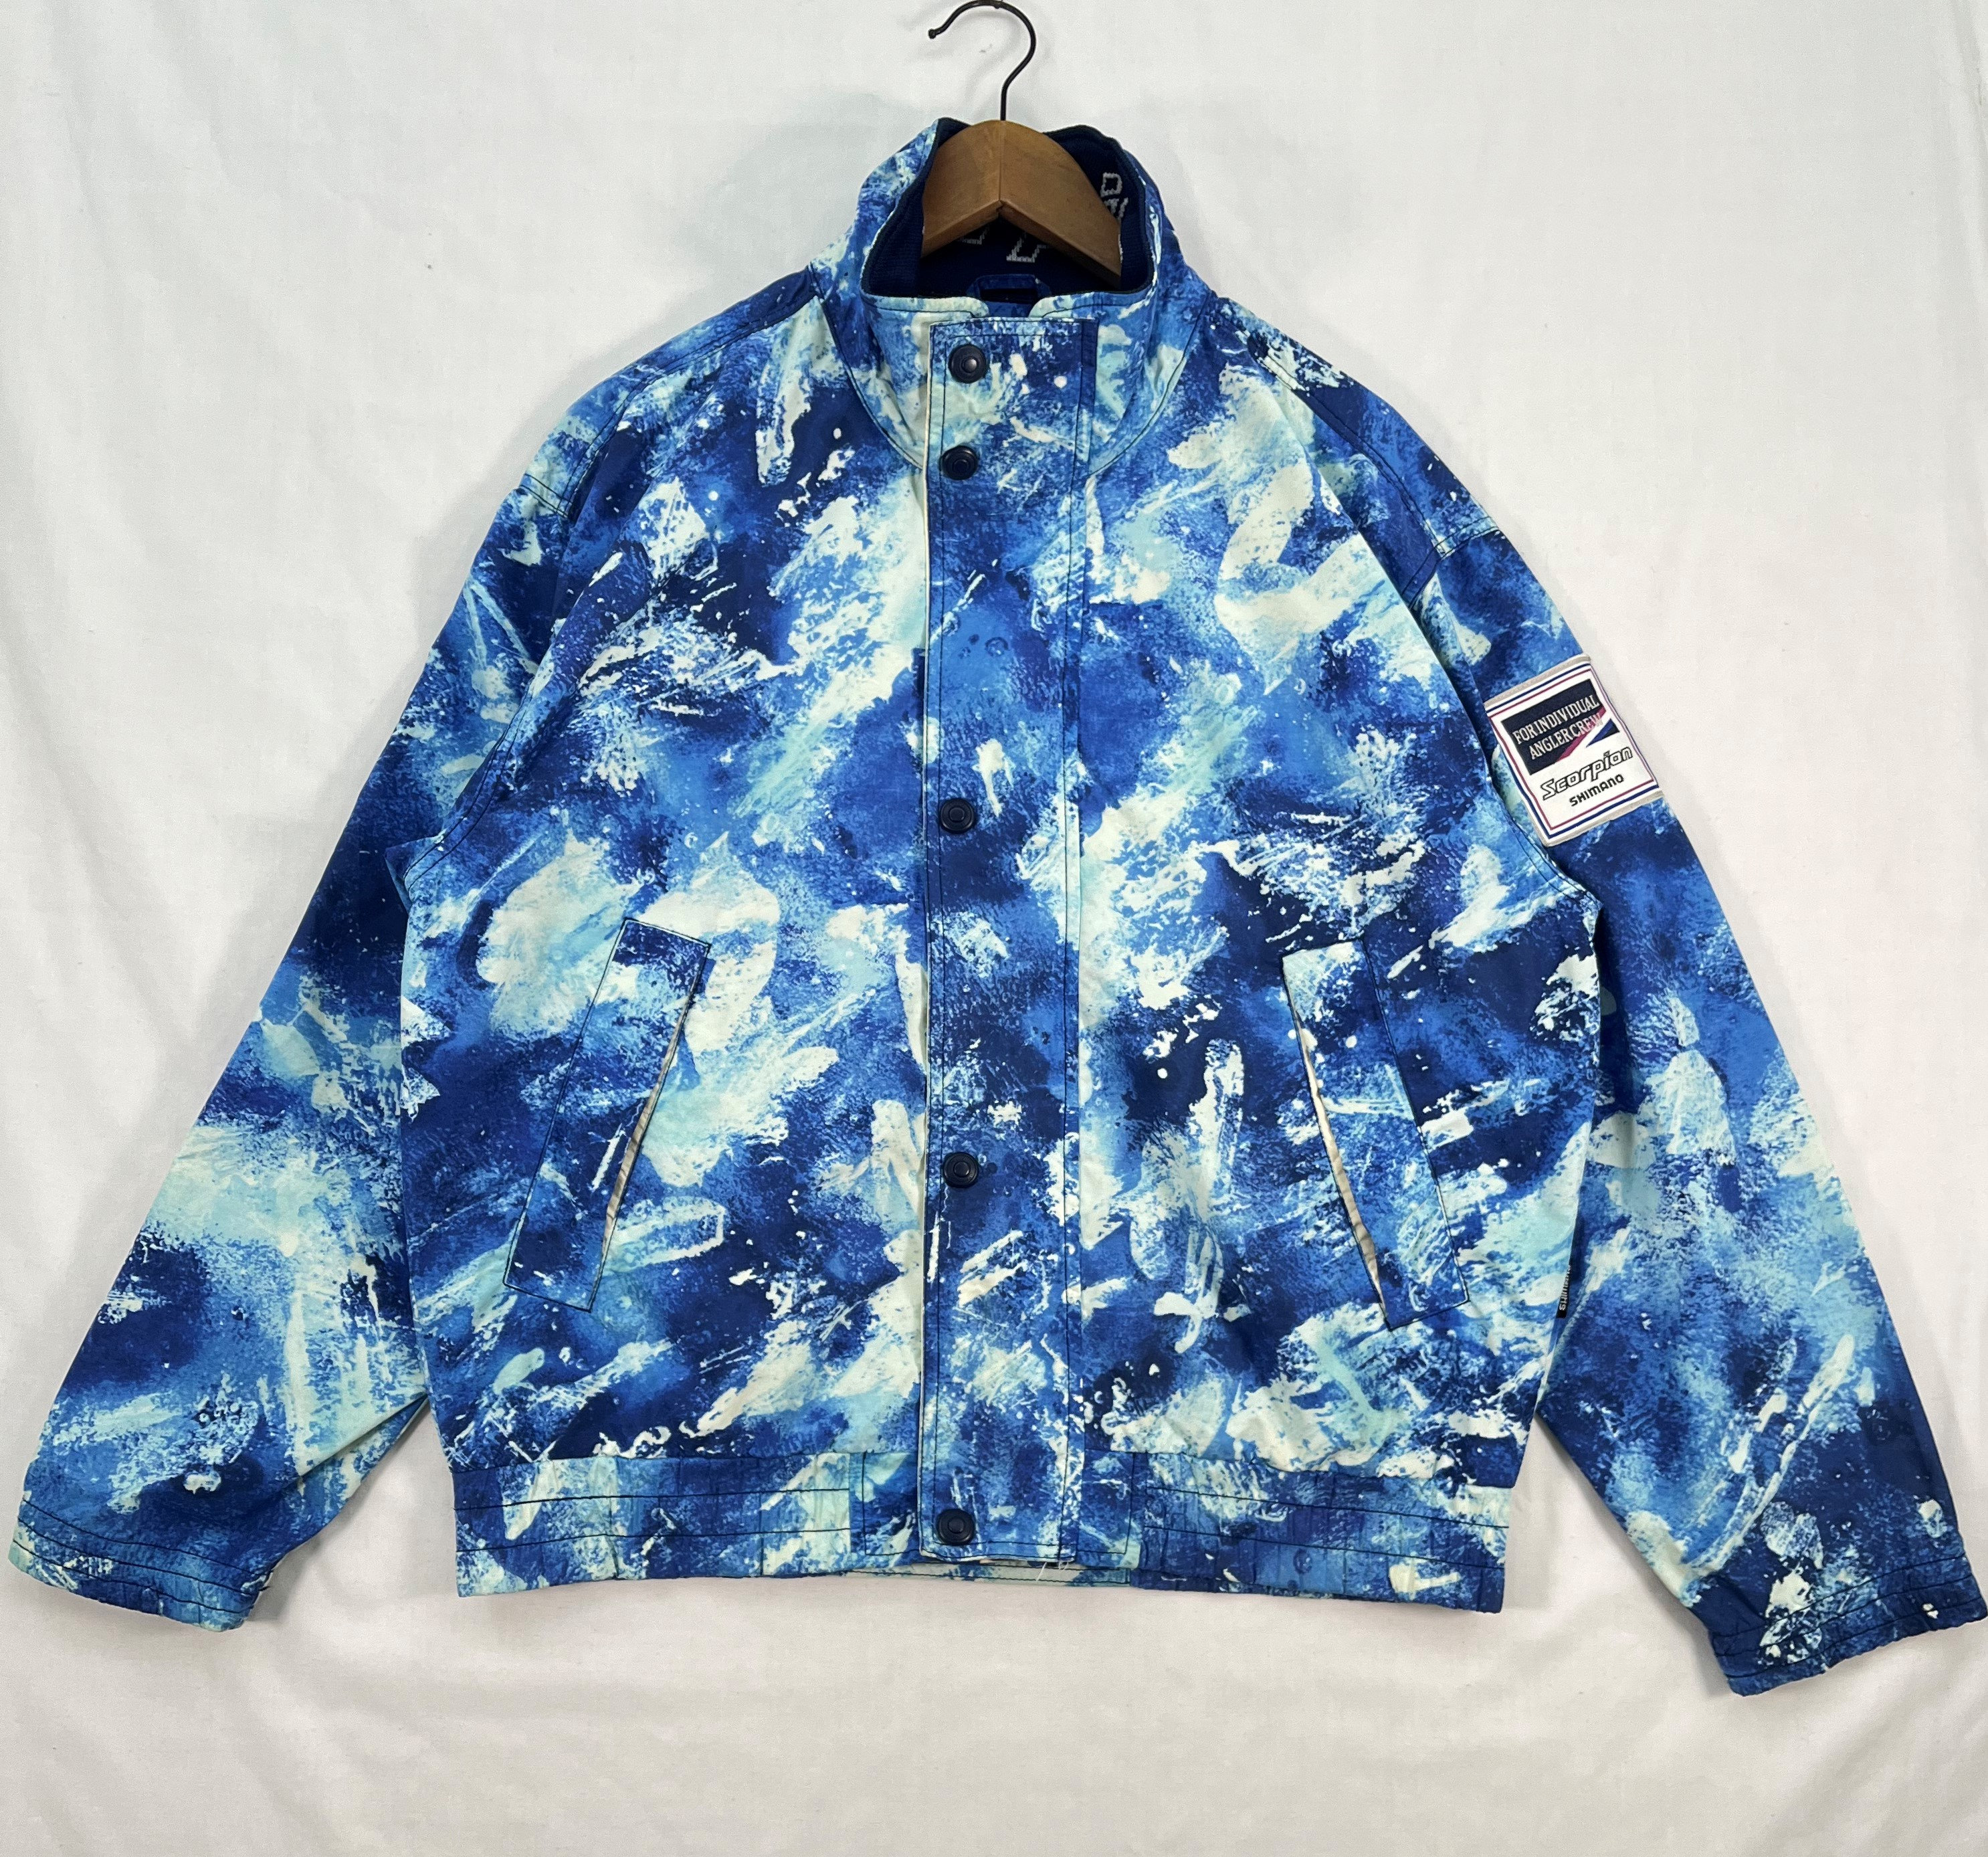 Vintage Scorpion Shimano Blue Paint Pattern Jacket Windbreaker Fishing Ocean Sportswear Men Women Size L